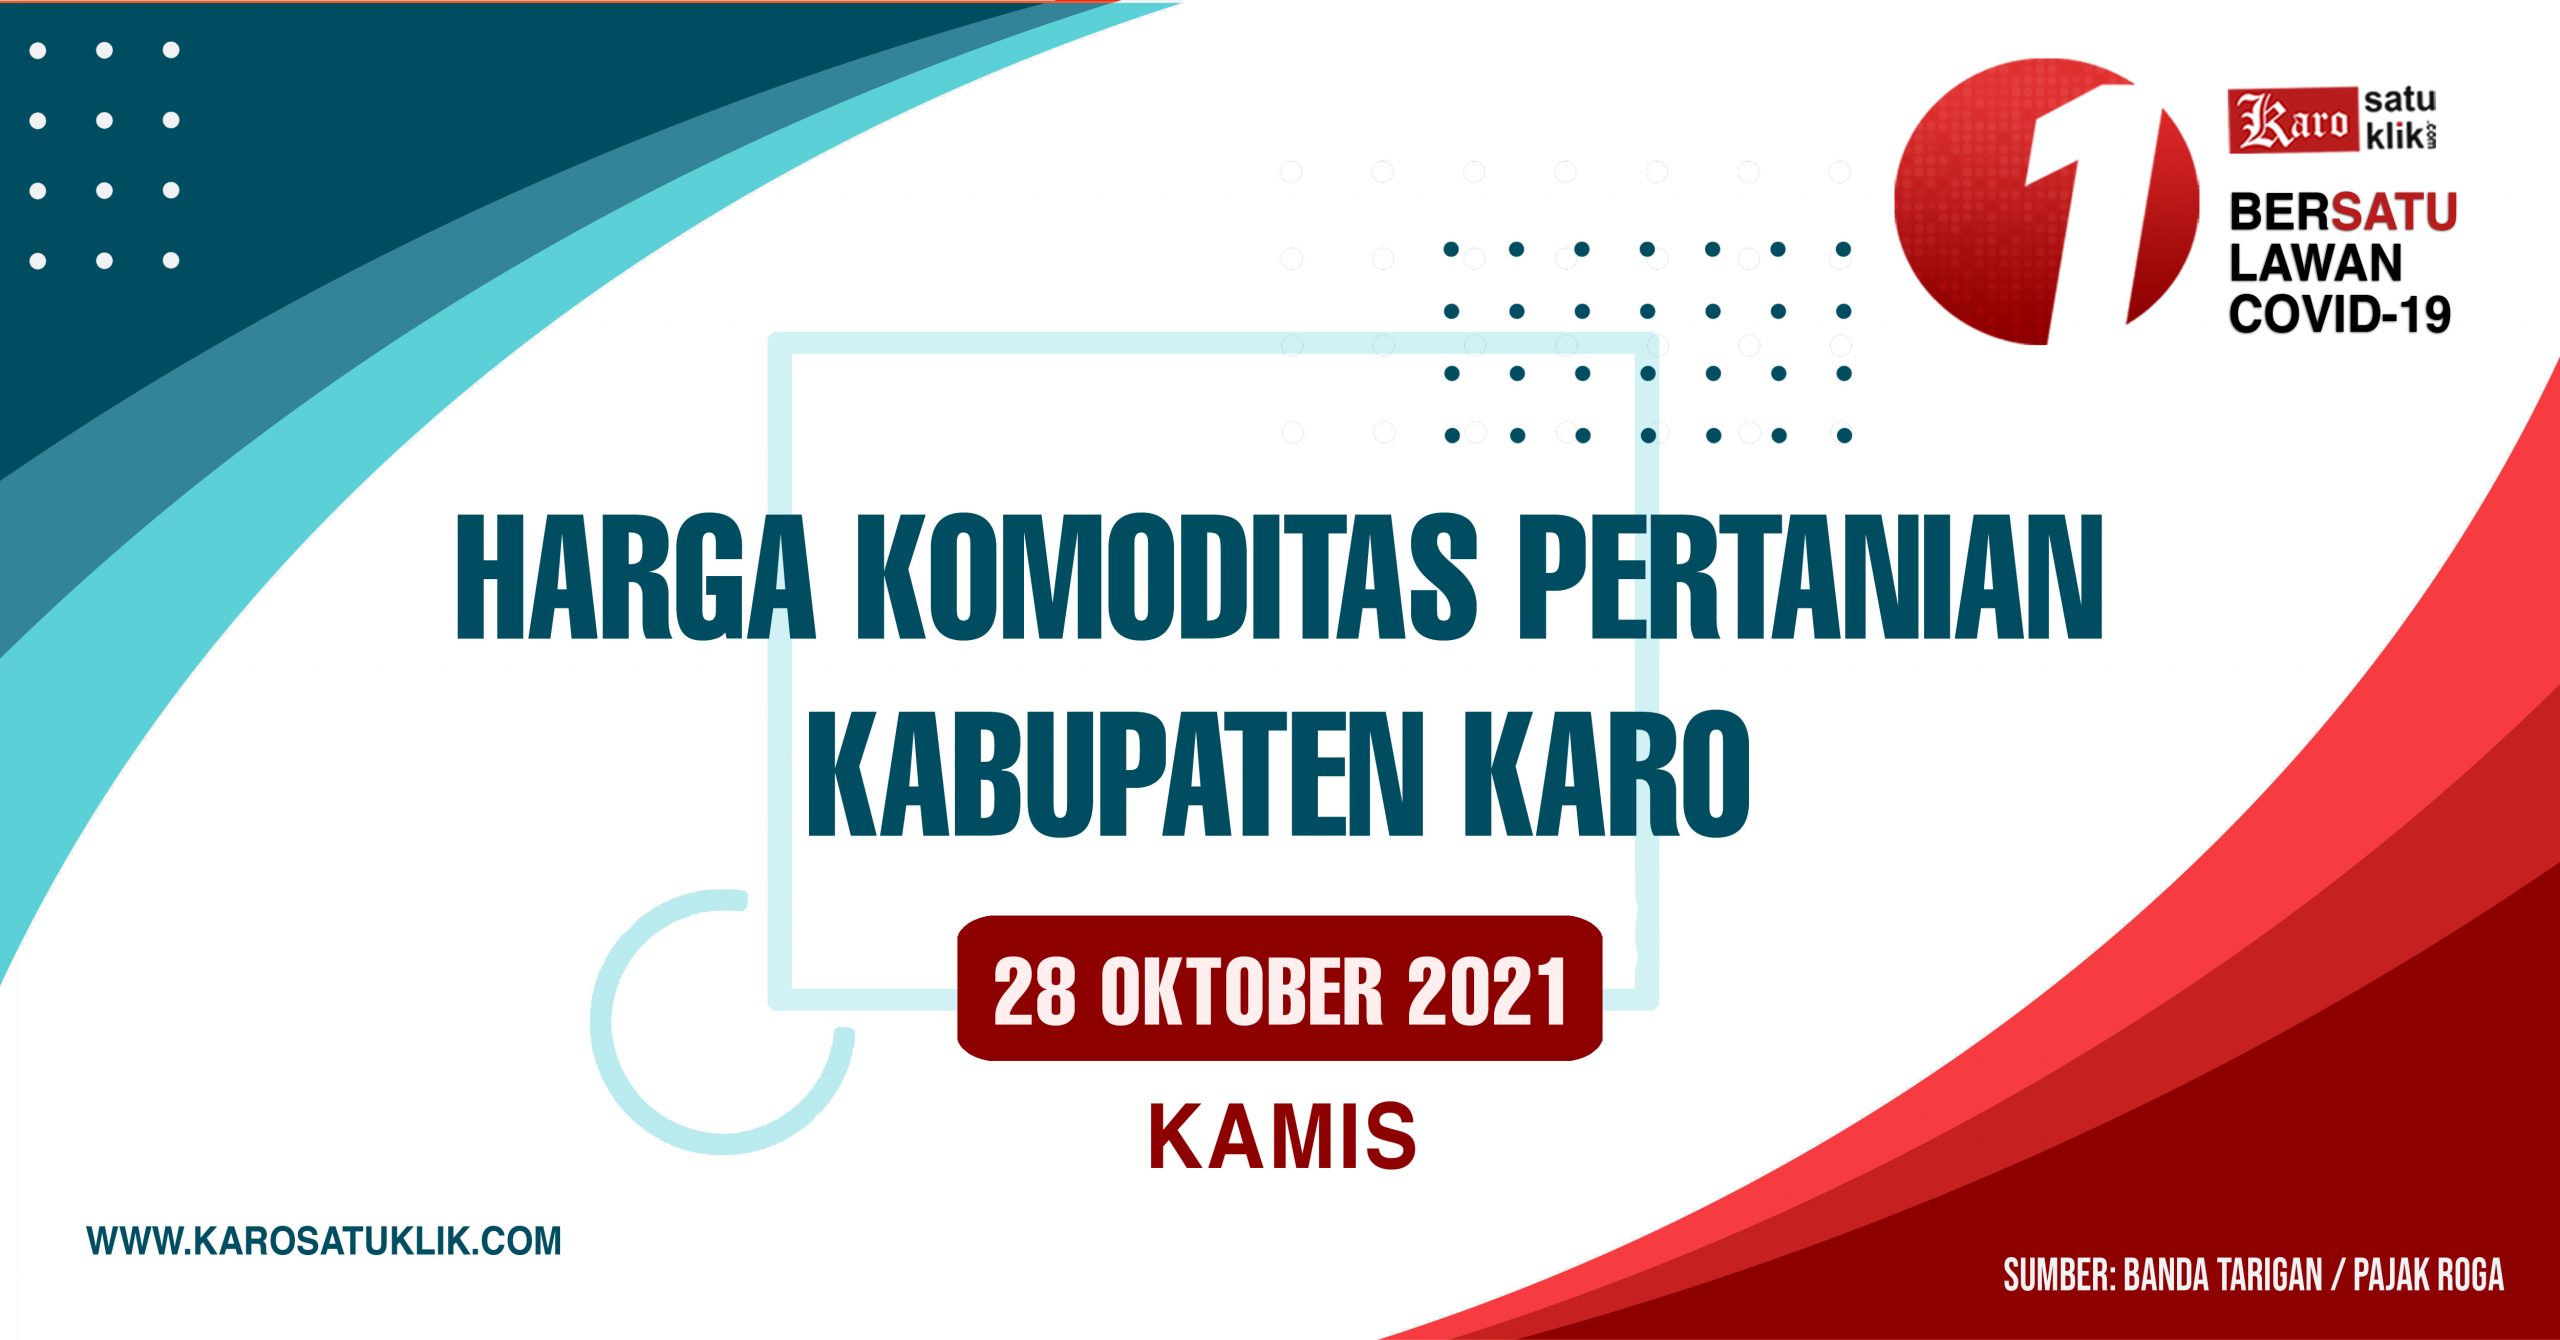 Daftar Harga Komoditas Pertanian Kabupaten Karo, 28 Oktober 2021